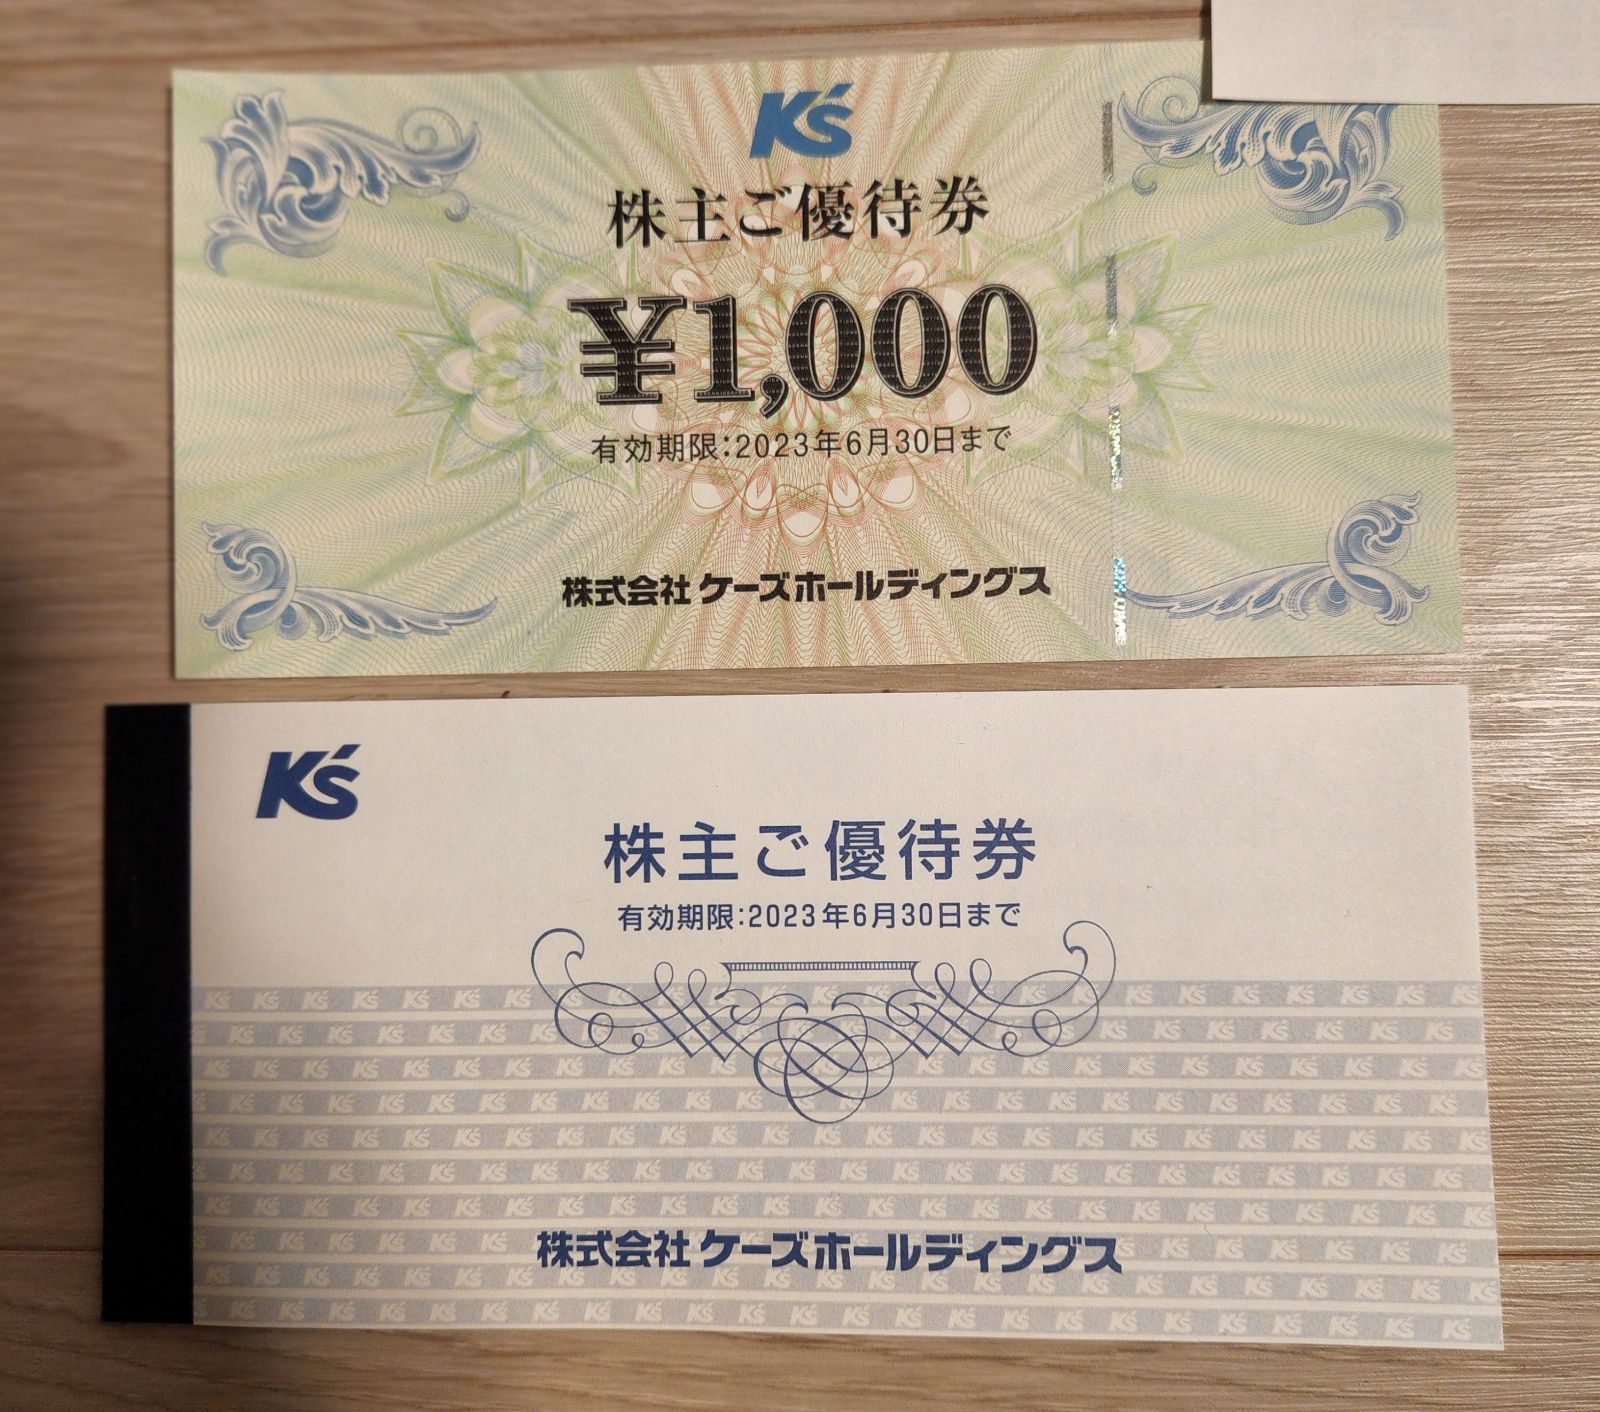 ケーズデンキ 株主優待 11000円分 | hartwellspremium.com